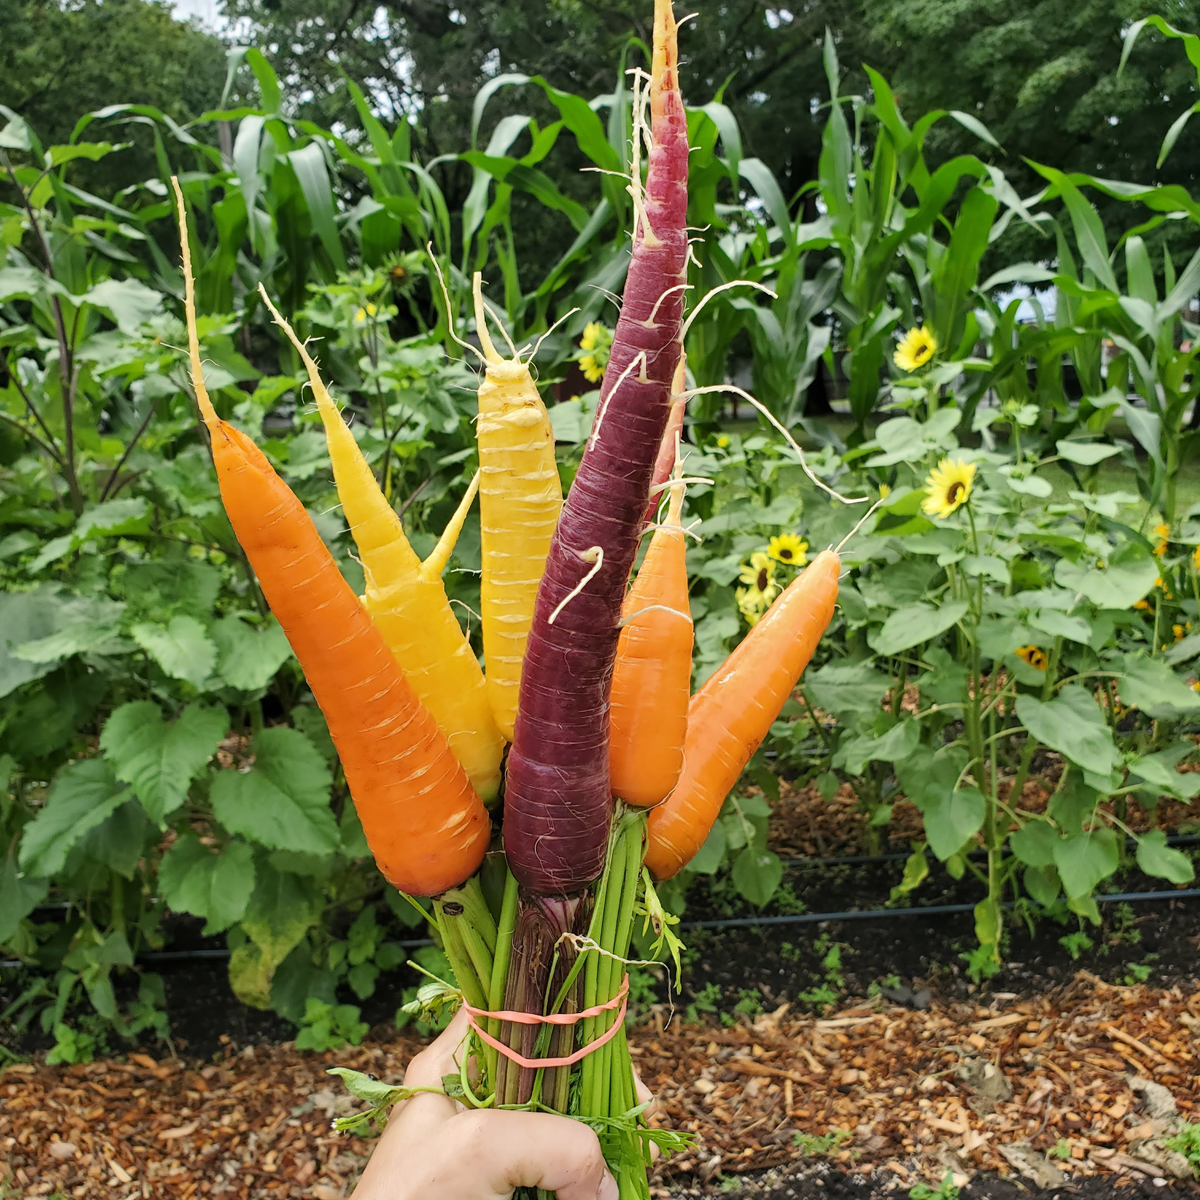 Carousel House farm multi colored carrots